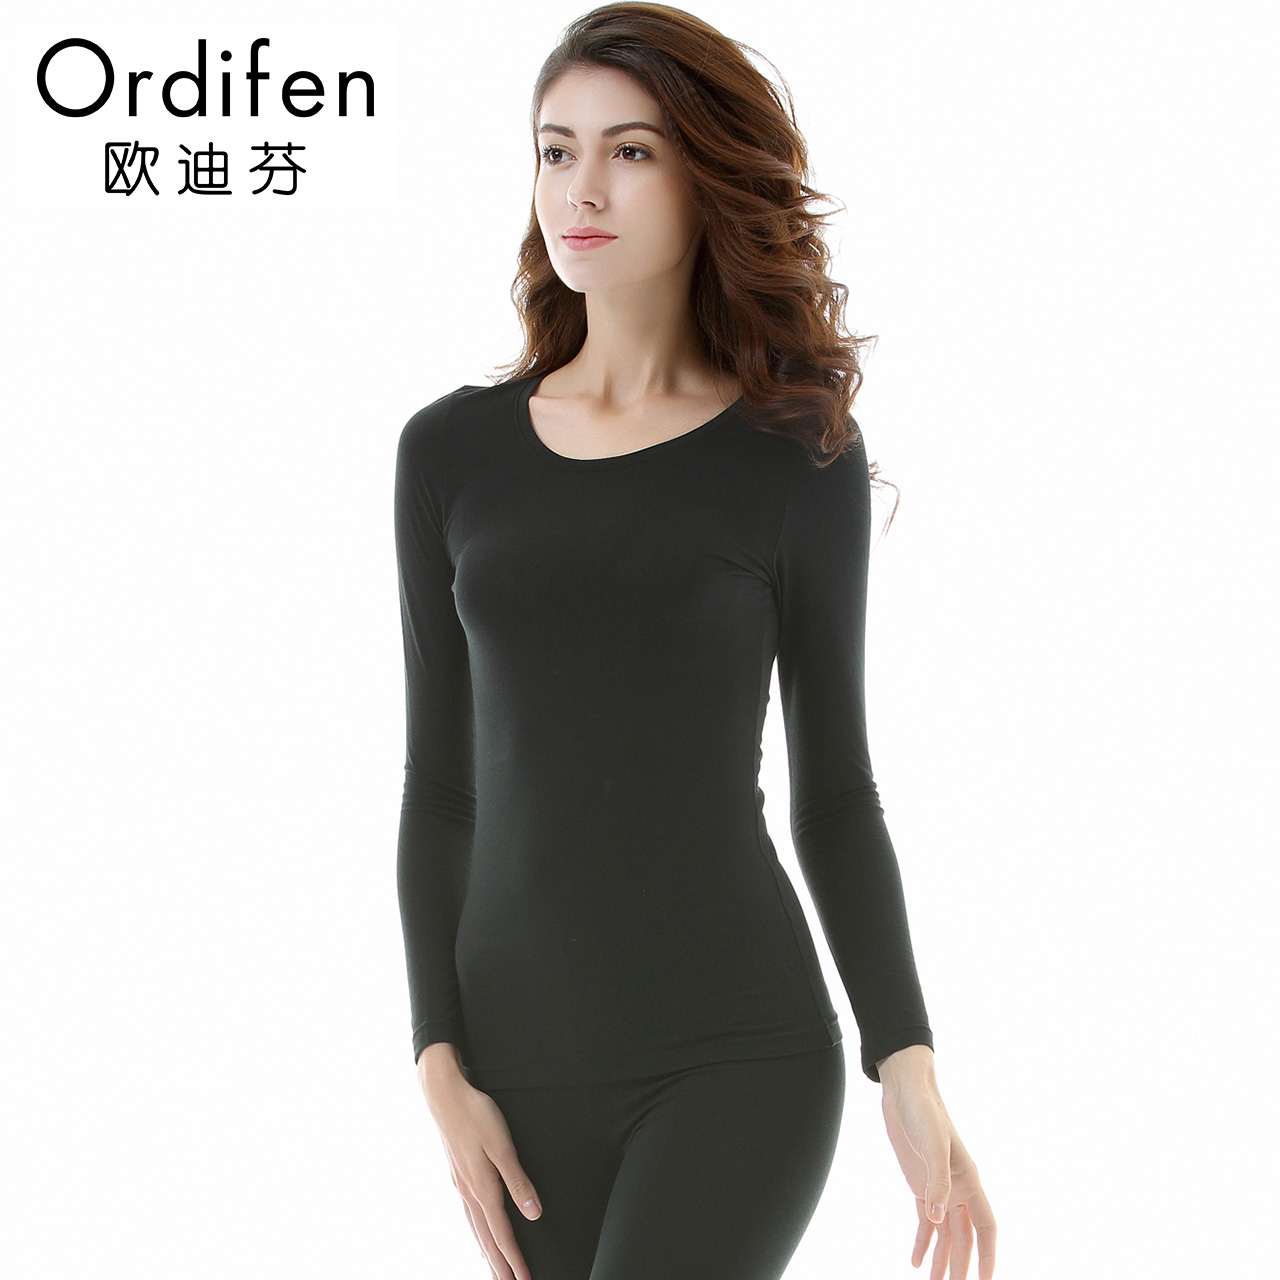 đồ lót Odiffin Simple vòng cổ áo cơ thể thoải mái womens đồ lót nhiệt bộ OW7131.